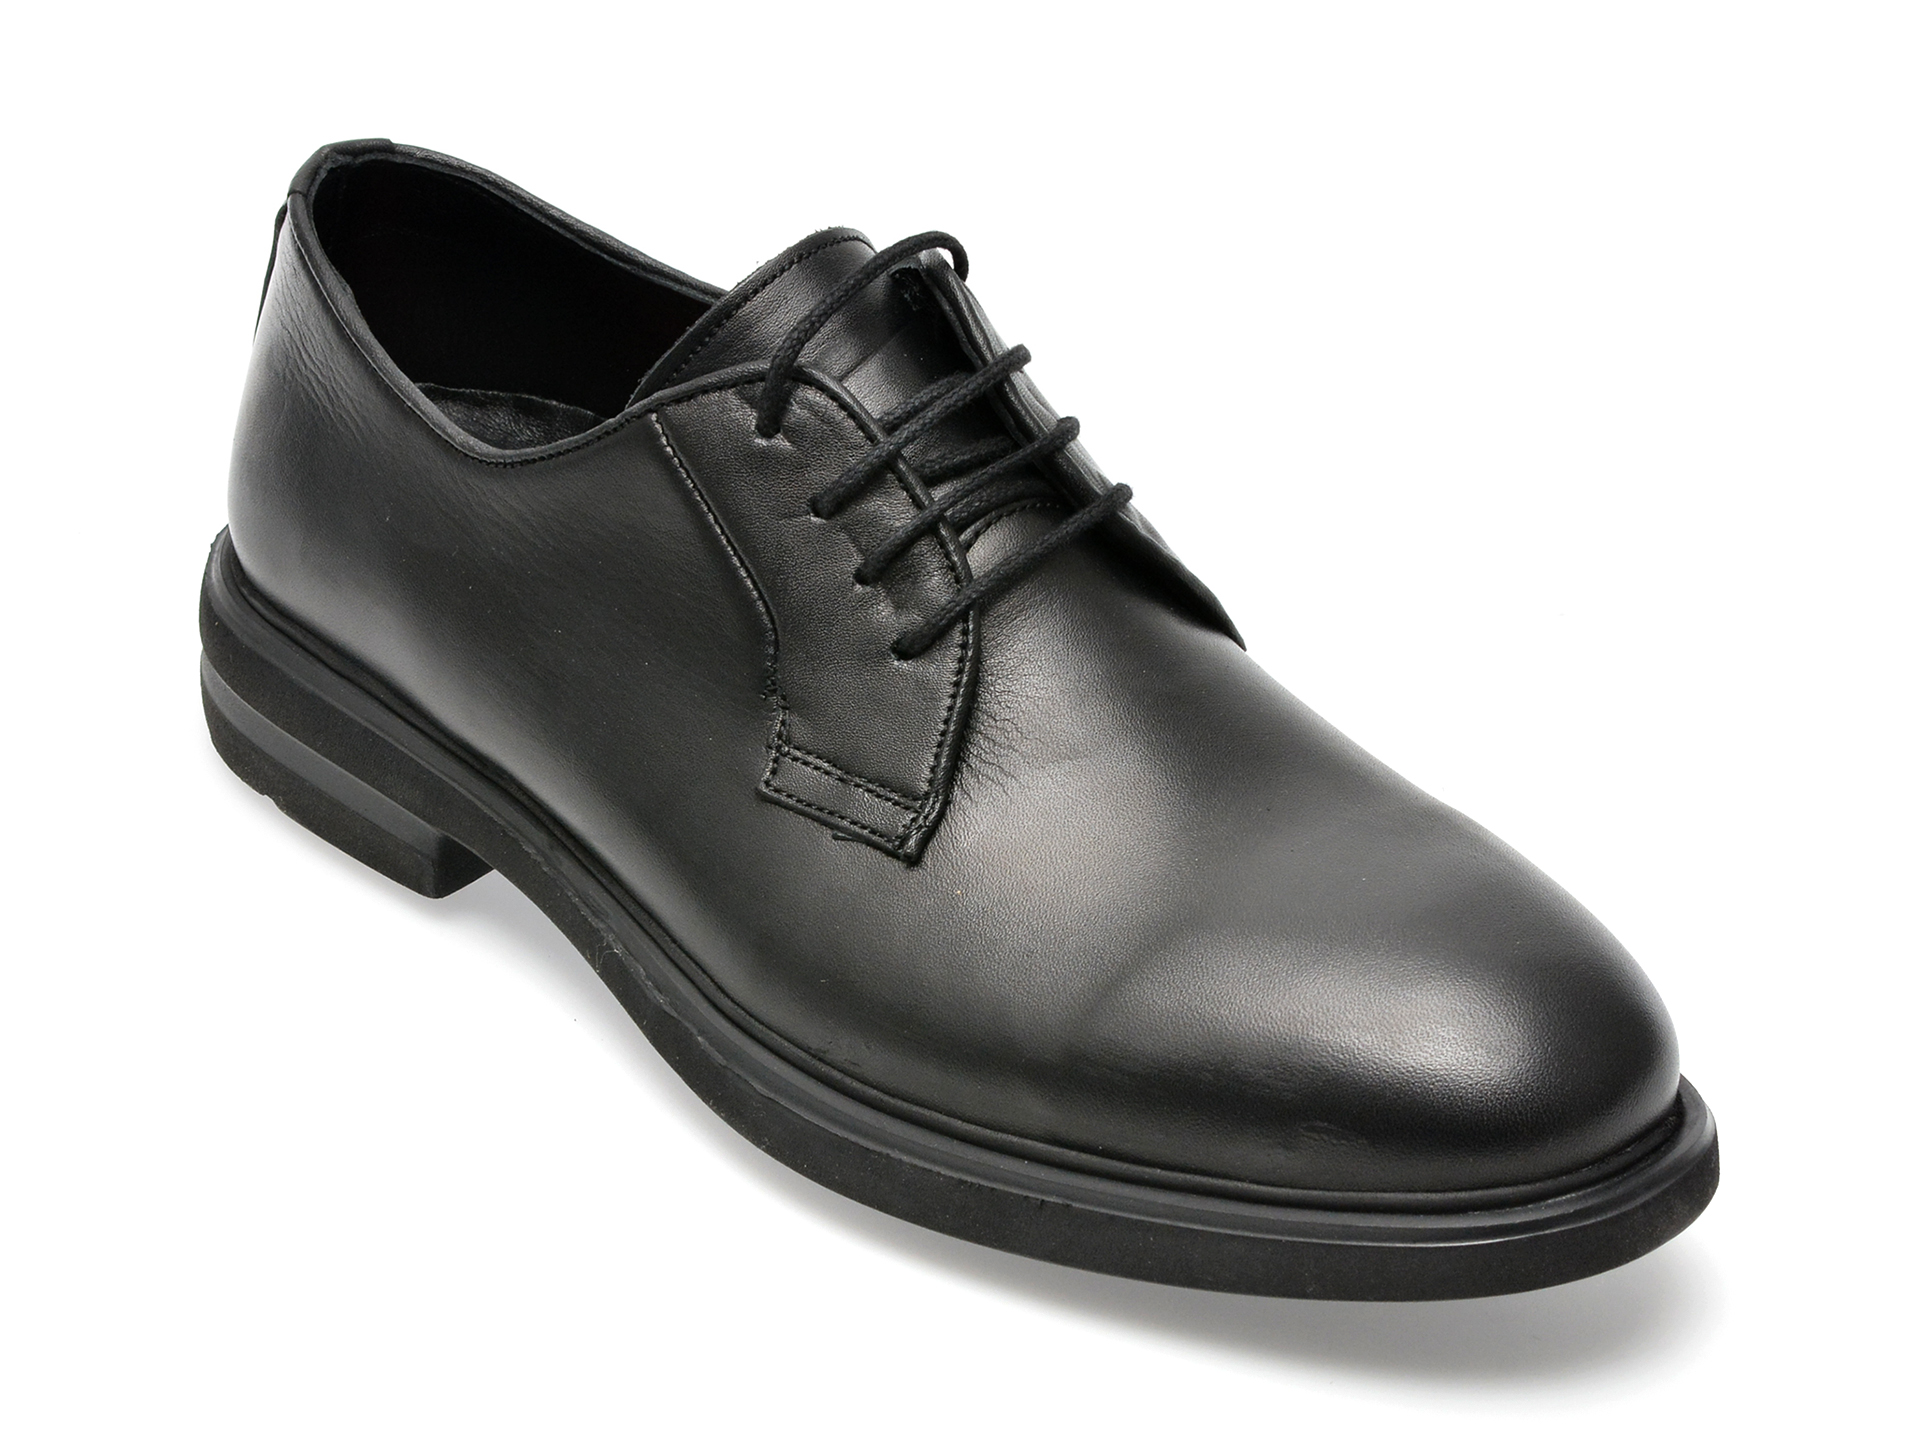 Pantofi OTTER negri, E1801, din piele naturala barbati 2023-09-22